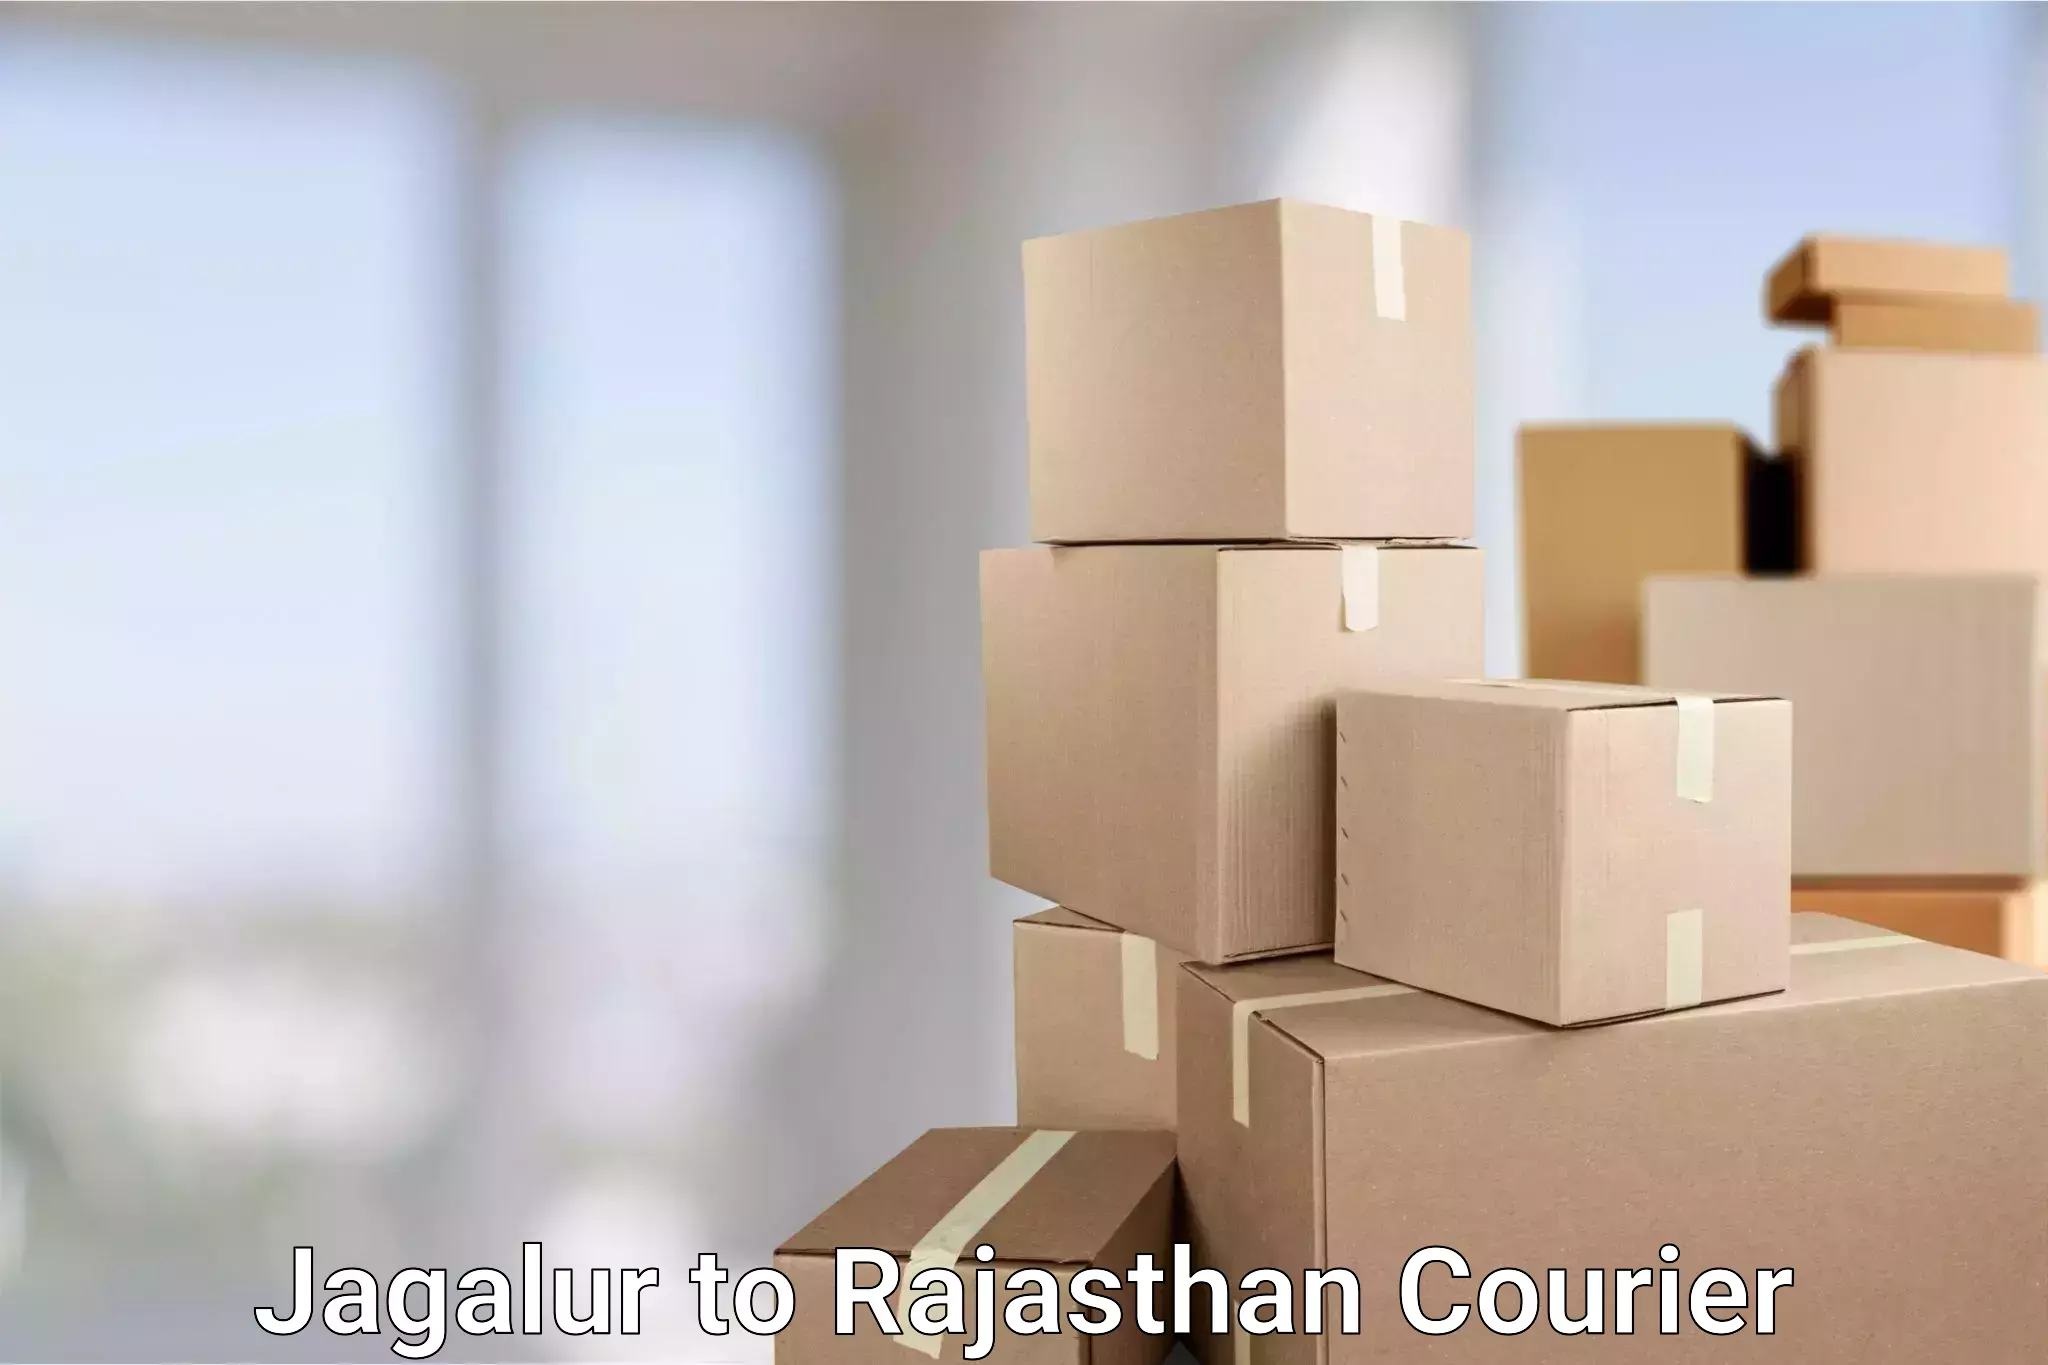 Regular parcel service Jagalur to Rajasthan